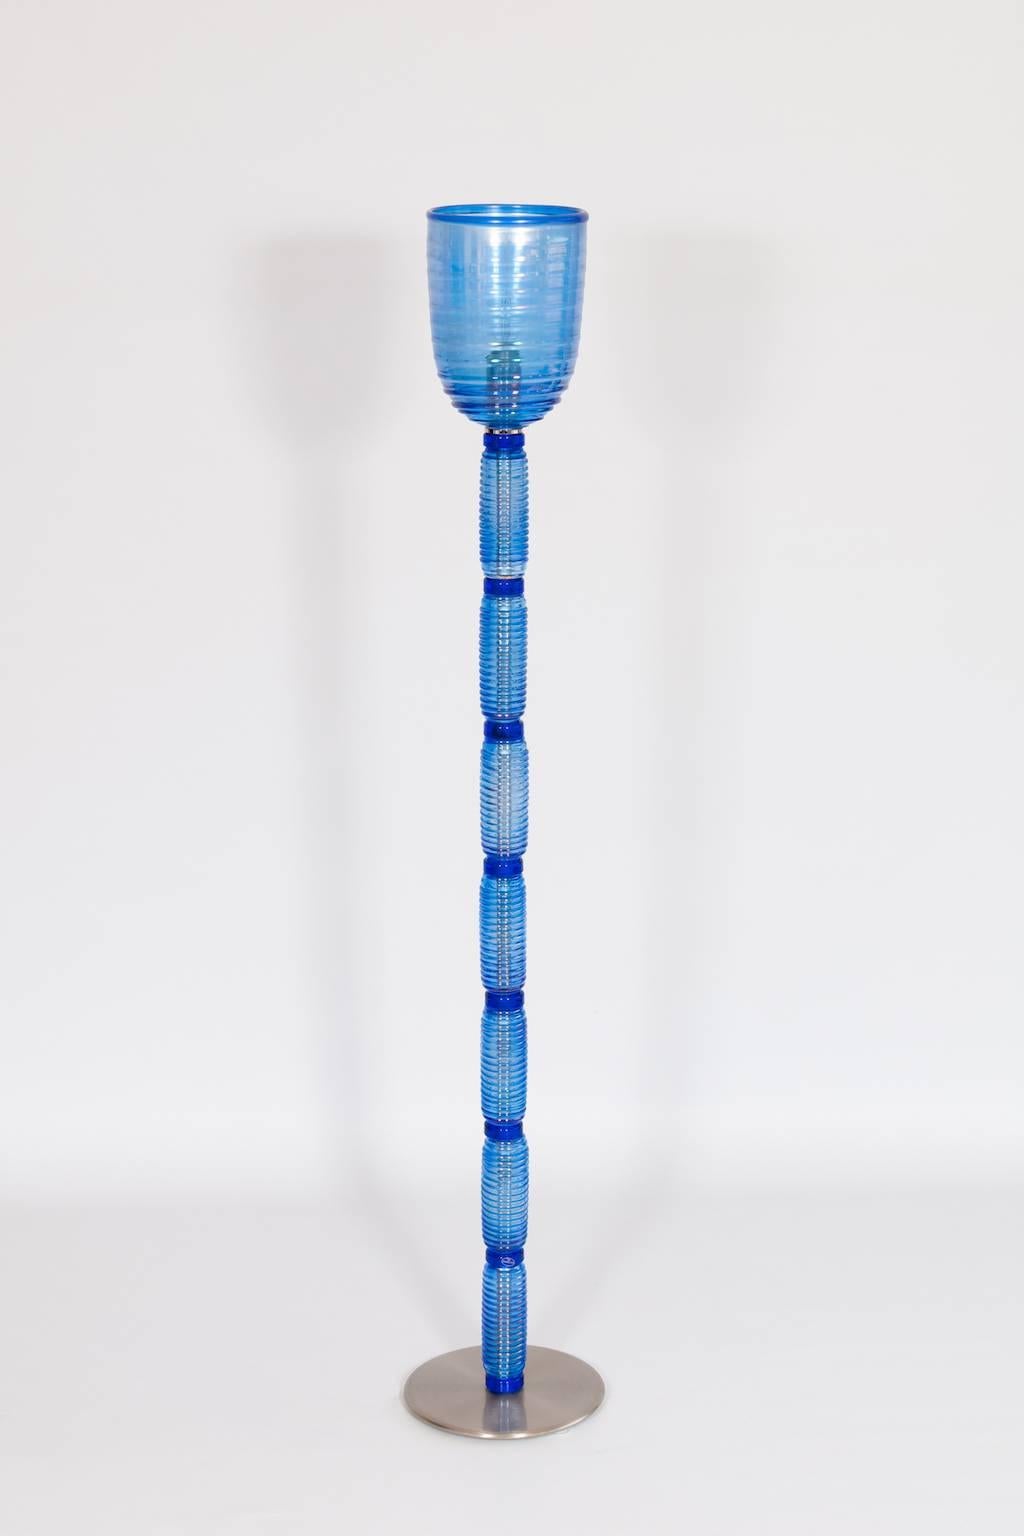 Lampadaire en verre Murano bleu clair et couleur irisée Italie années 1990.
Il s'agit d'un exquis lampadaire moderne entièrement fabriqué à la main sur l'île vénitienne de Murano dans les années 1990. Il est composé d'une base ronde chromée, d'une